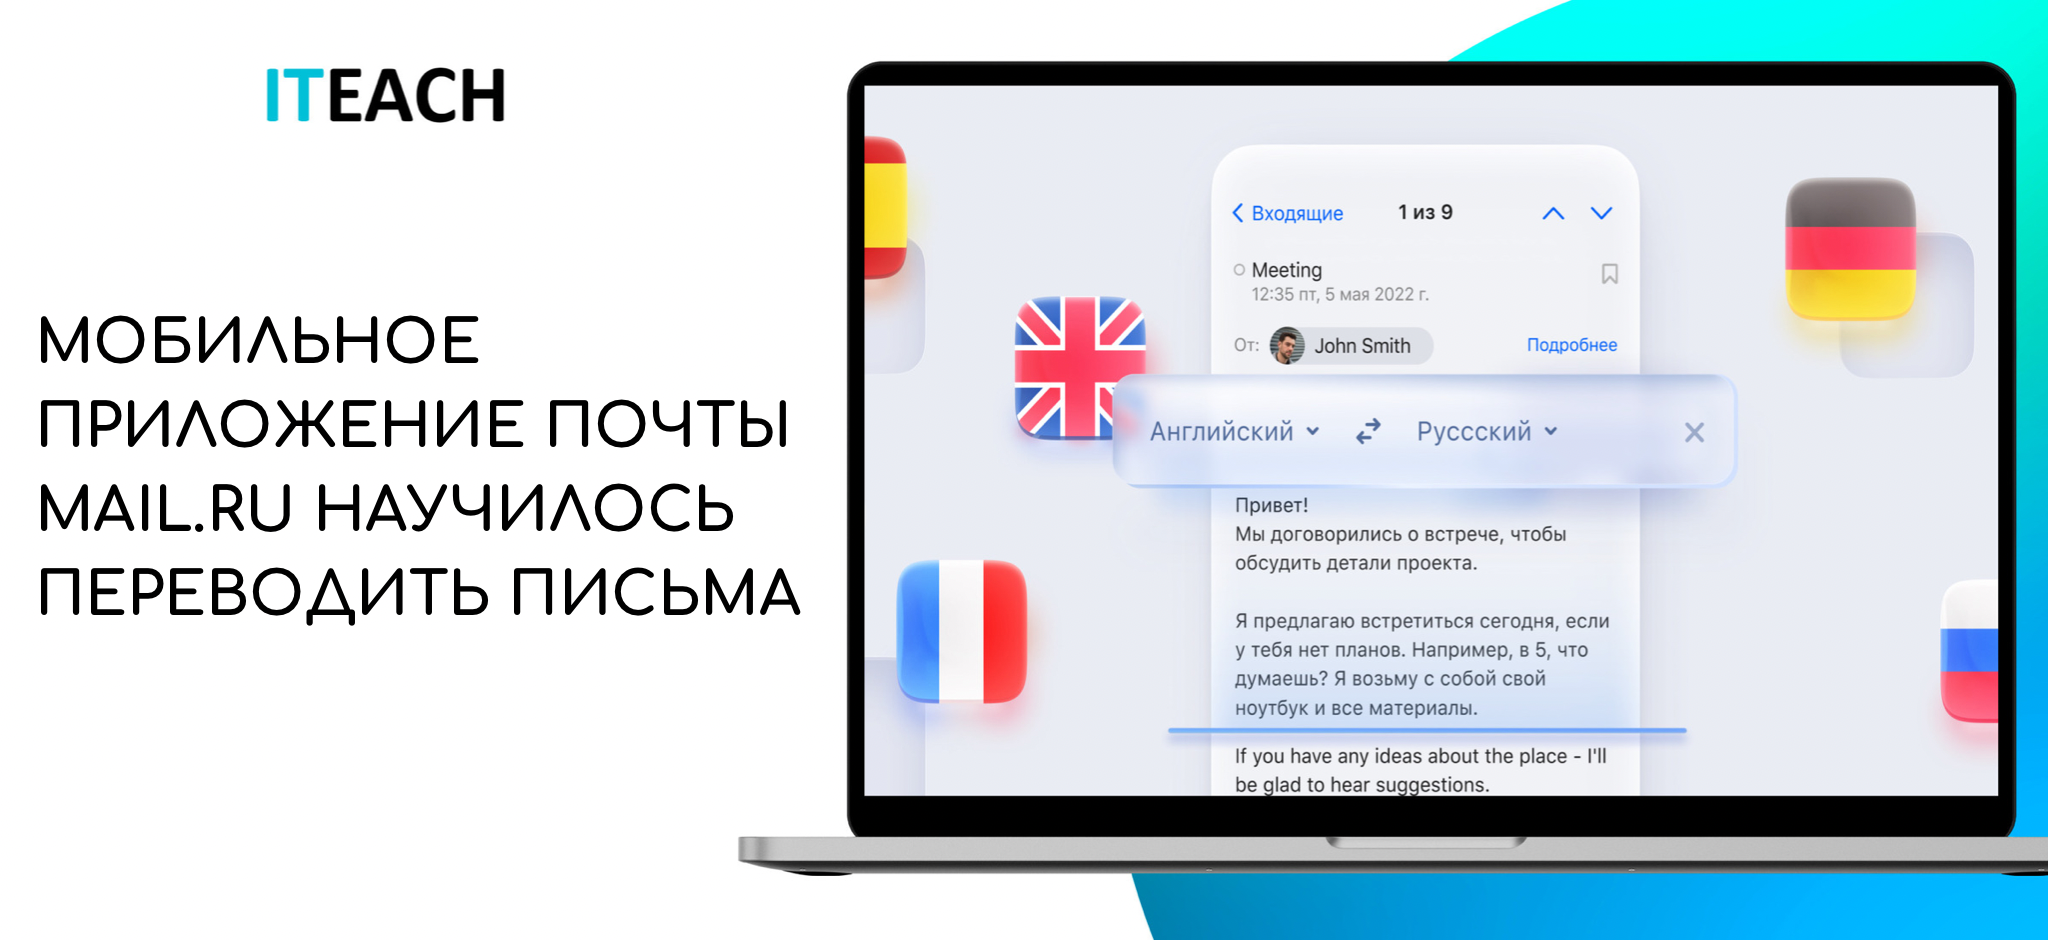 Как переводить сообщения в телеграмме на русский язык фото 31